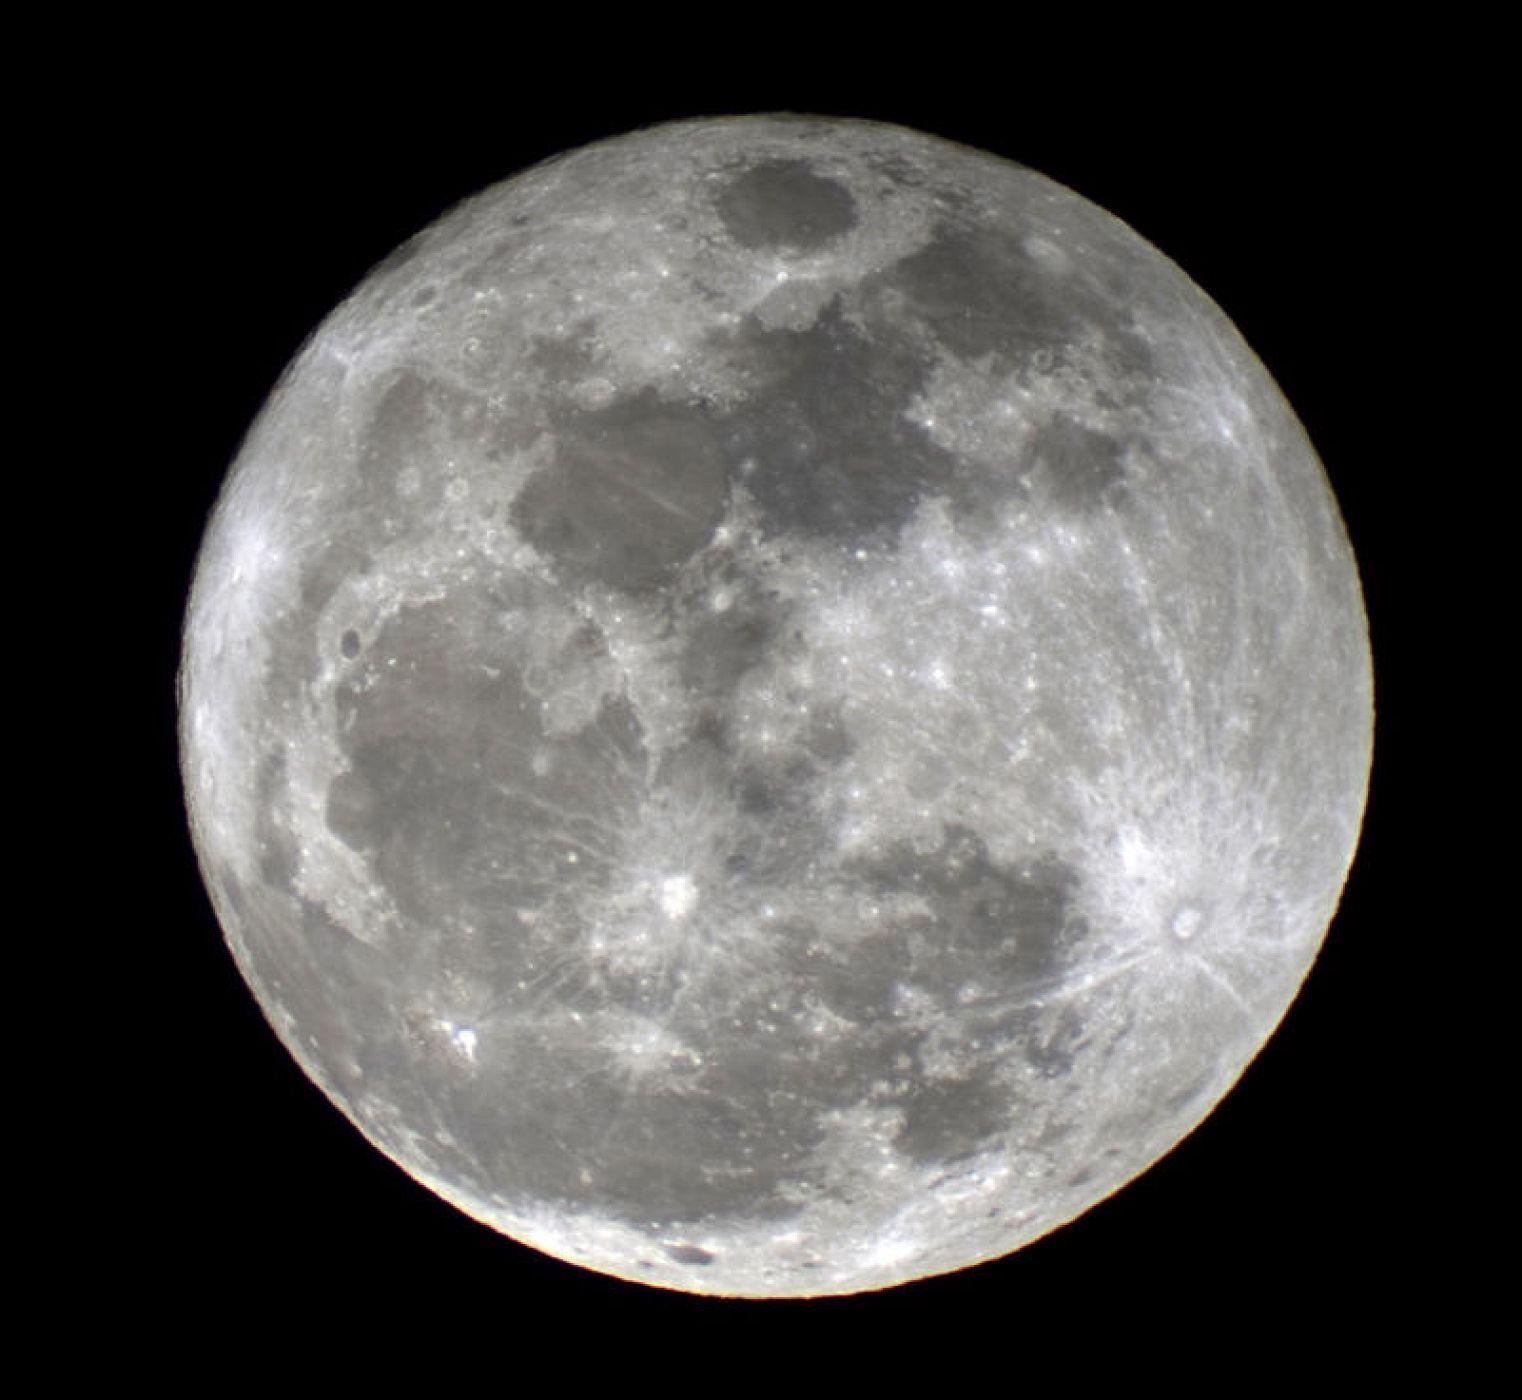 La noche del 5 de mayo se podrá observar la Luna más grande de 2012, con un tamaño ligeramente superior al normal que podrán apreciar los astrónomos aficionados con sus telescopios.